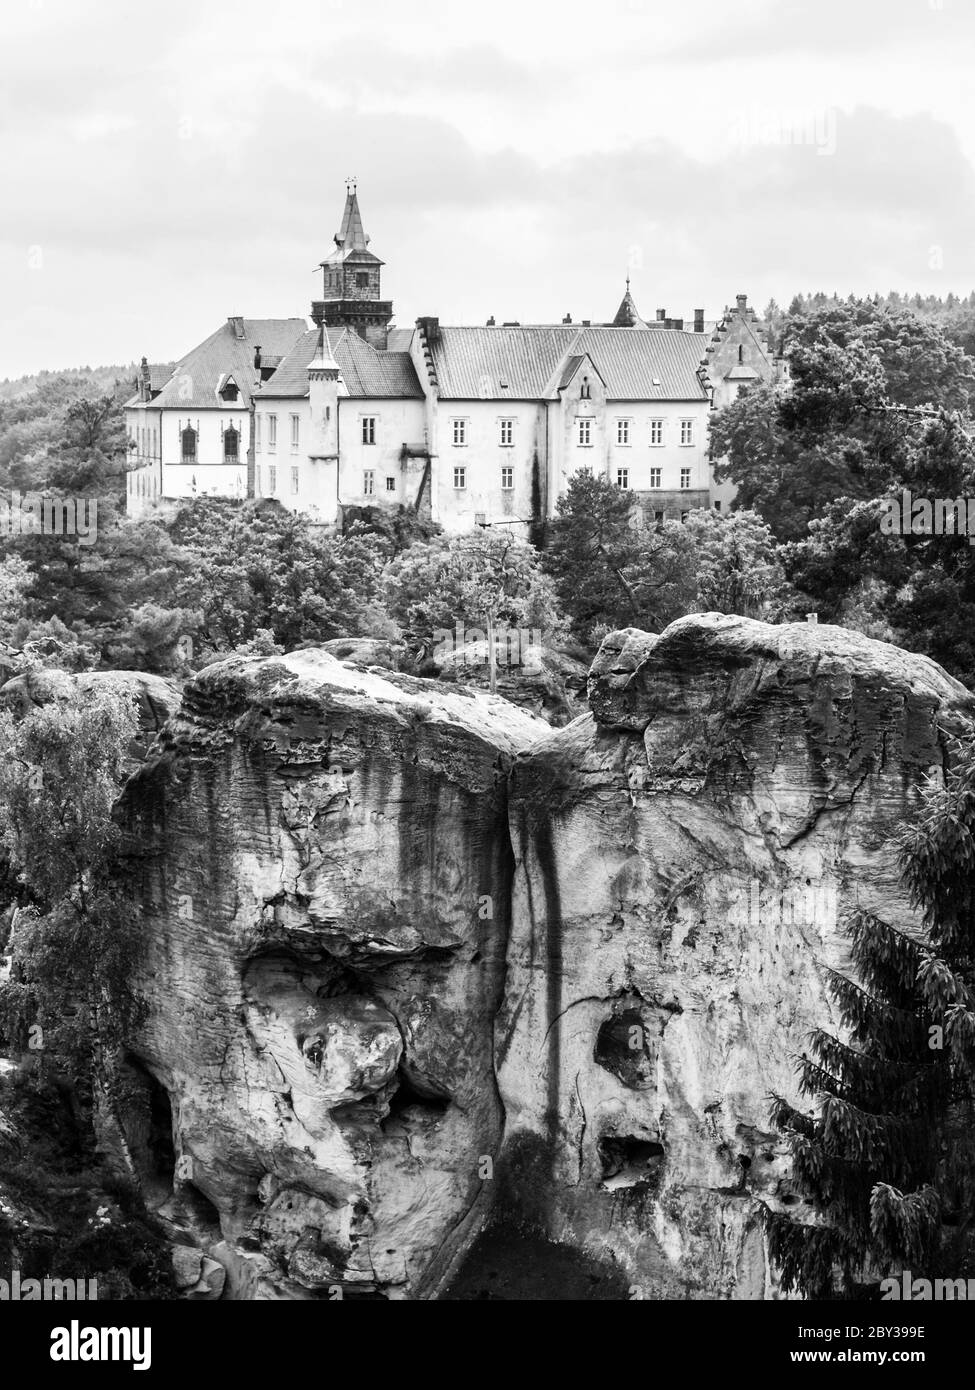 Château médiéval de Hruba Skala situé sur une falaise de grès abrupte dans le Paradis de Bohême, ou Cesky Raj, République tchèque. Image en noir et blanc. Banque D'Images